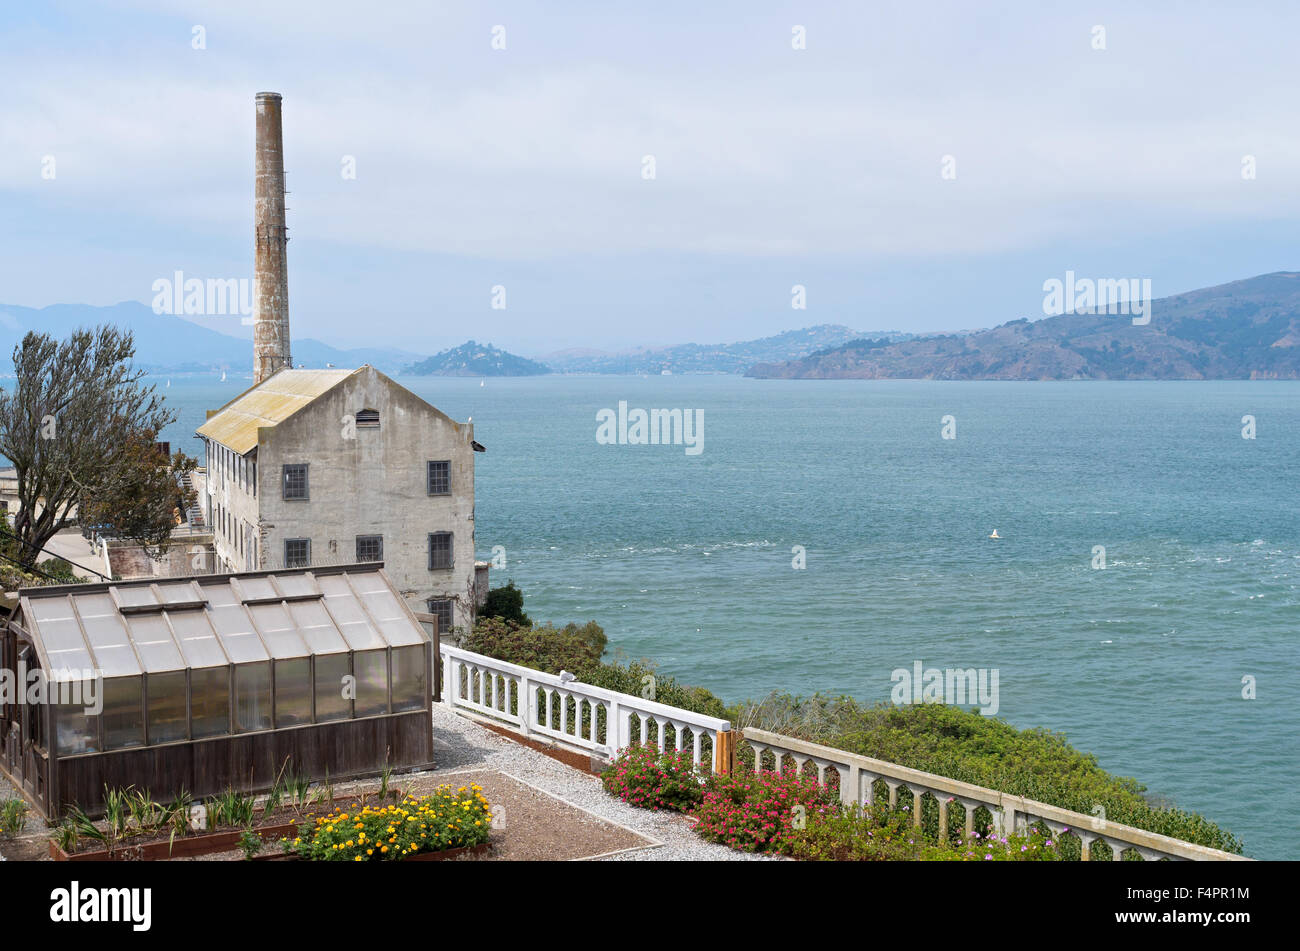 Maison de services publics ou de la centrale et des émissions sur l'île d'Alcatraz à San Francisco bay de Californie donnant sur l'océan pacifique Banque D'Images